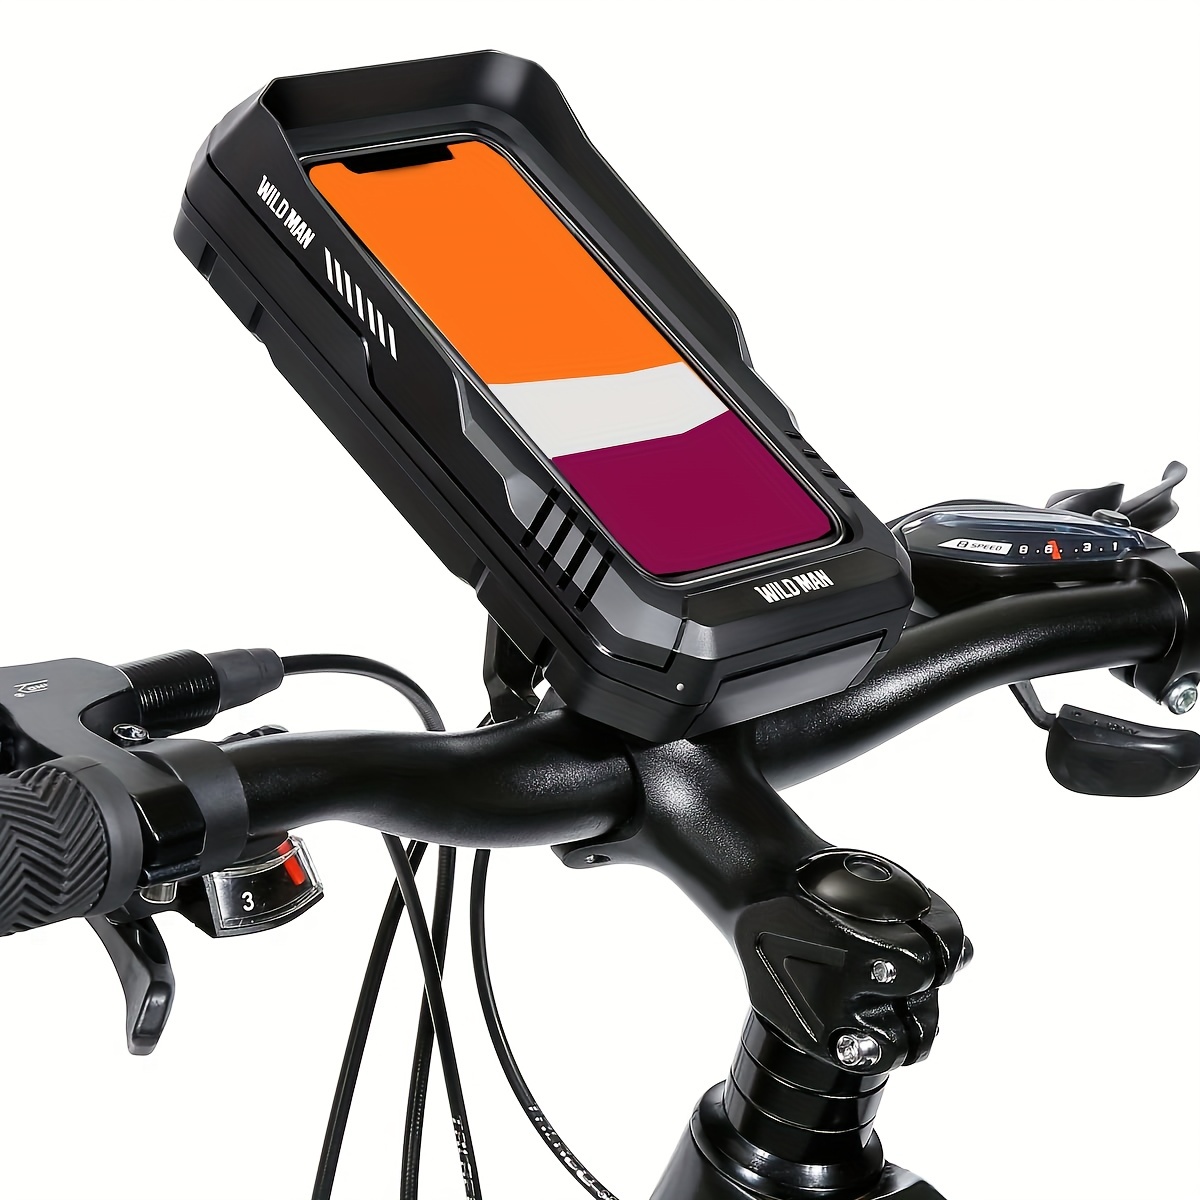 Sacoche guidon vélo 1 Litre - Support téléphone 7 inch VTT/Vélo De